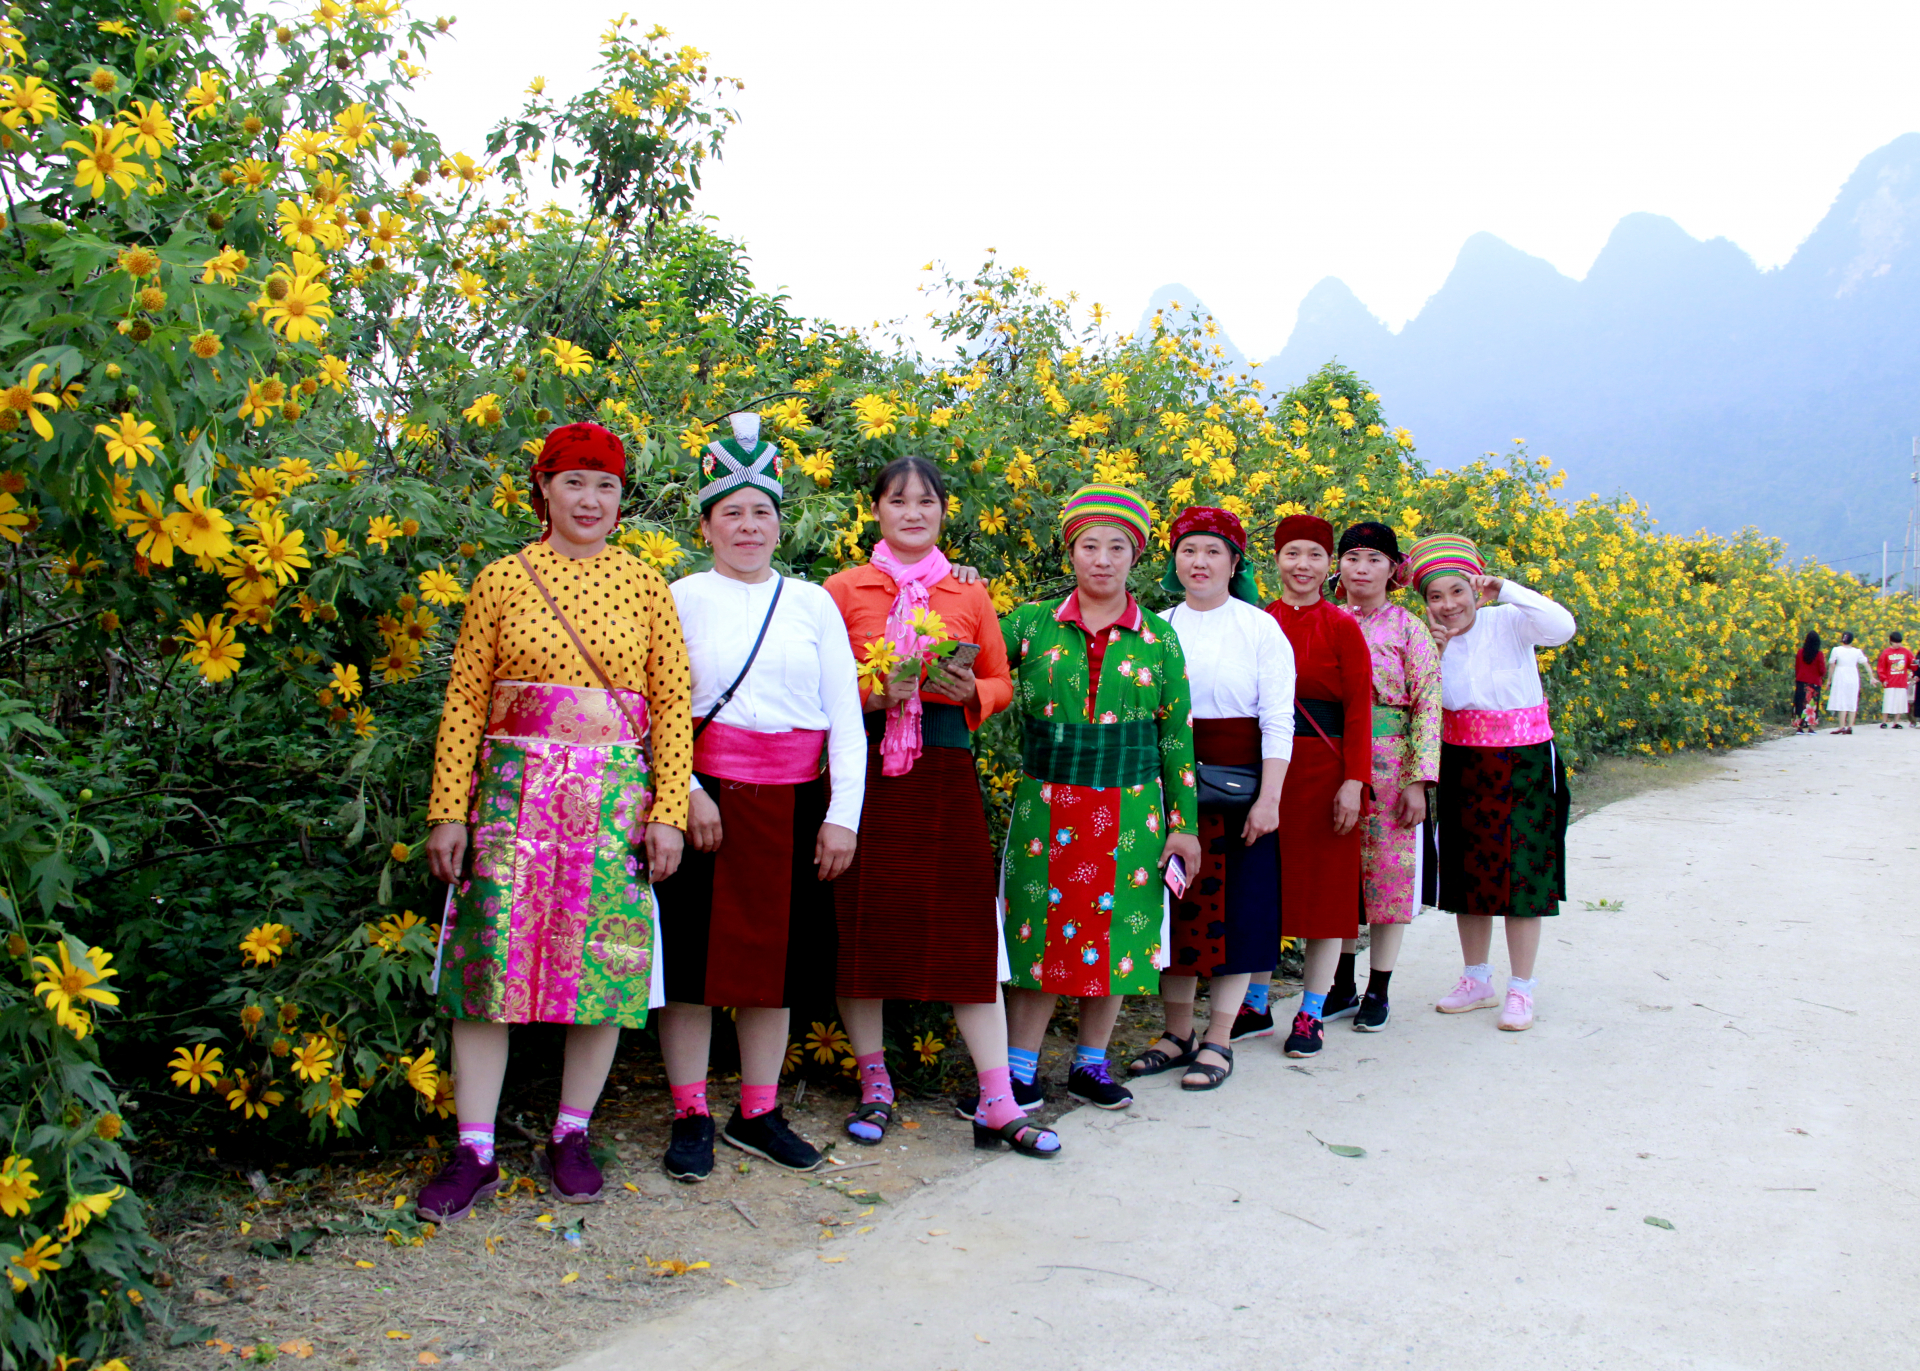 Người dân xã Phong Quang đi lễ hội trong trang phục truyền thống dân tộc.
